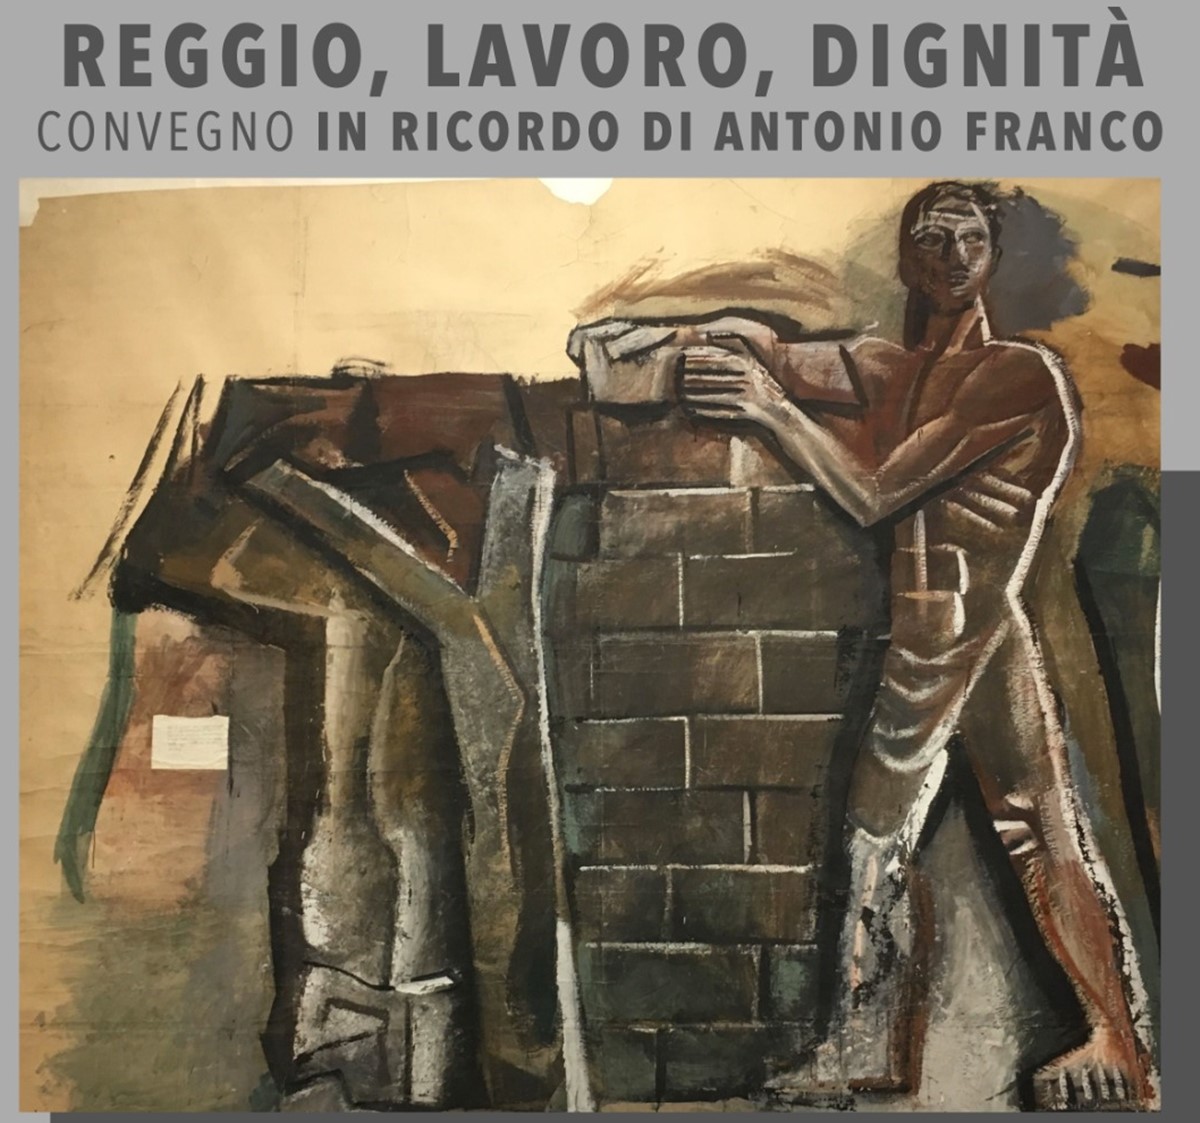 Reggio, convegno in ricordo di Antonio Franco “Reggio, Lavoro, Dignità”